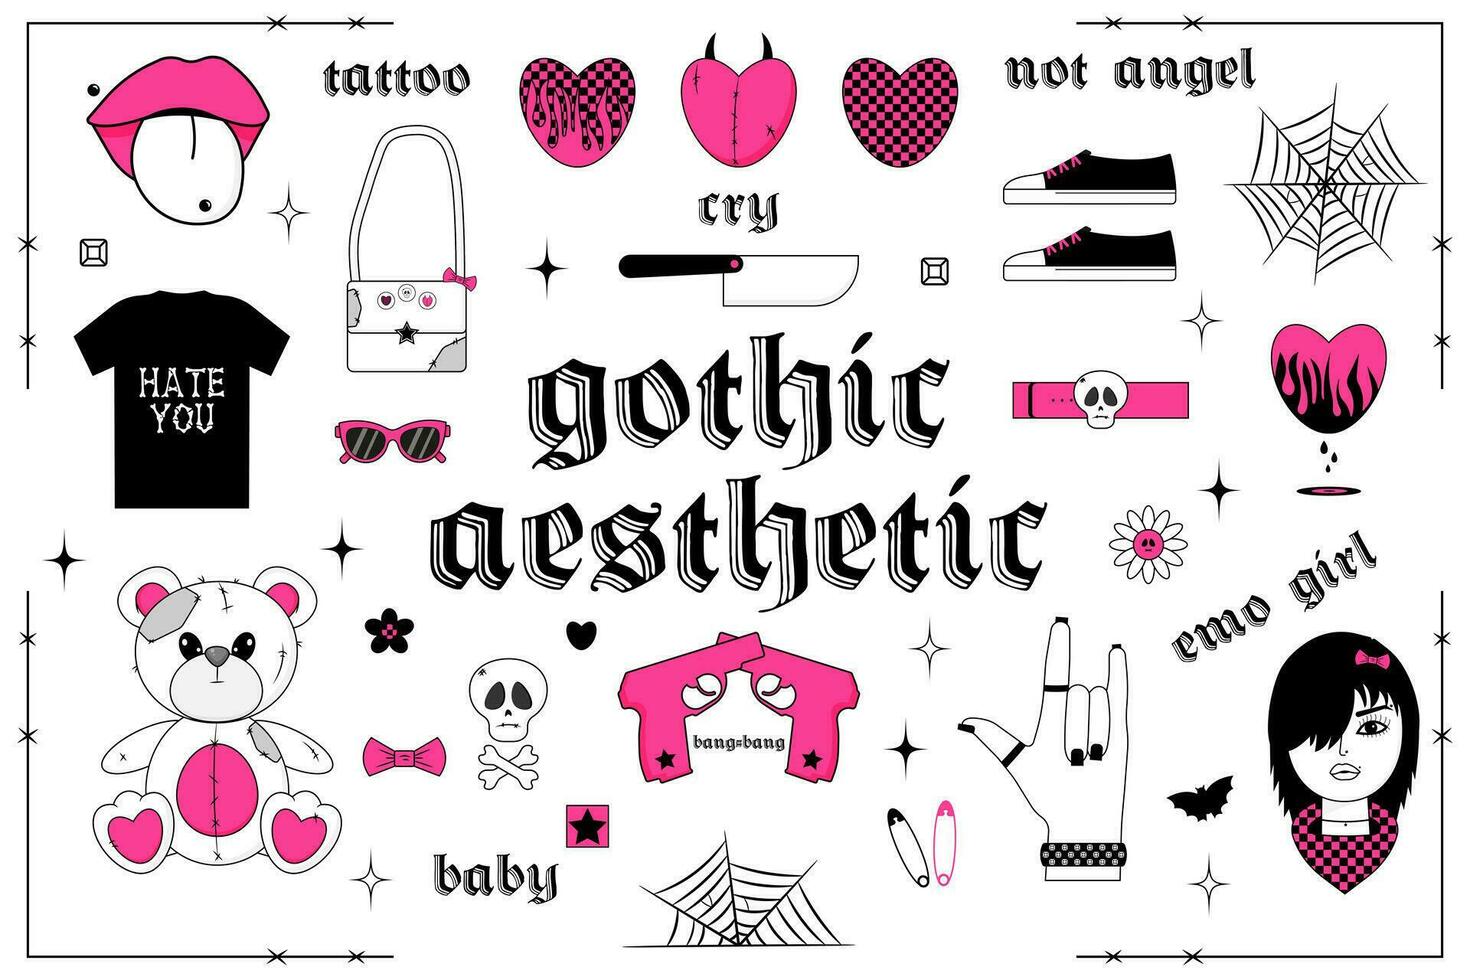 gotisch esthetisch in y2k, jaren 90, 00s en jaren 2000 stijl. reeks van vlak meisjesachtig stickers. beer, emo meisje, hart en andere elementen in modieus emo gothic. roze, zwart, wit kleuren. vector kunst illustratie